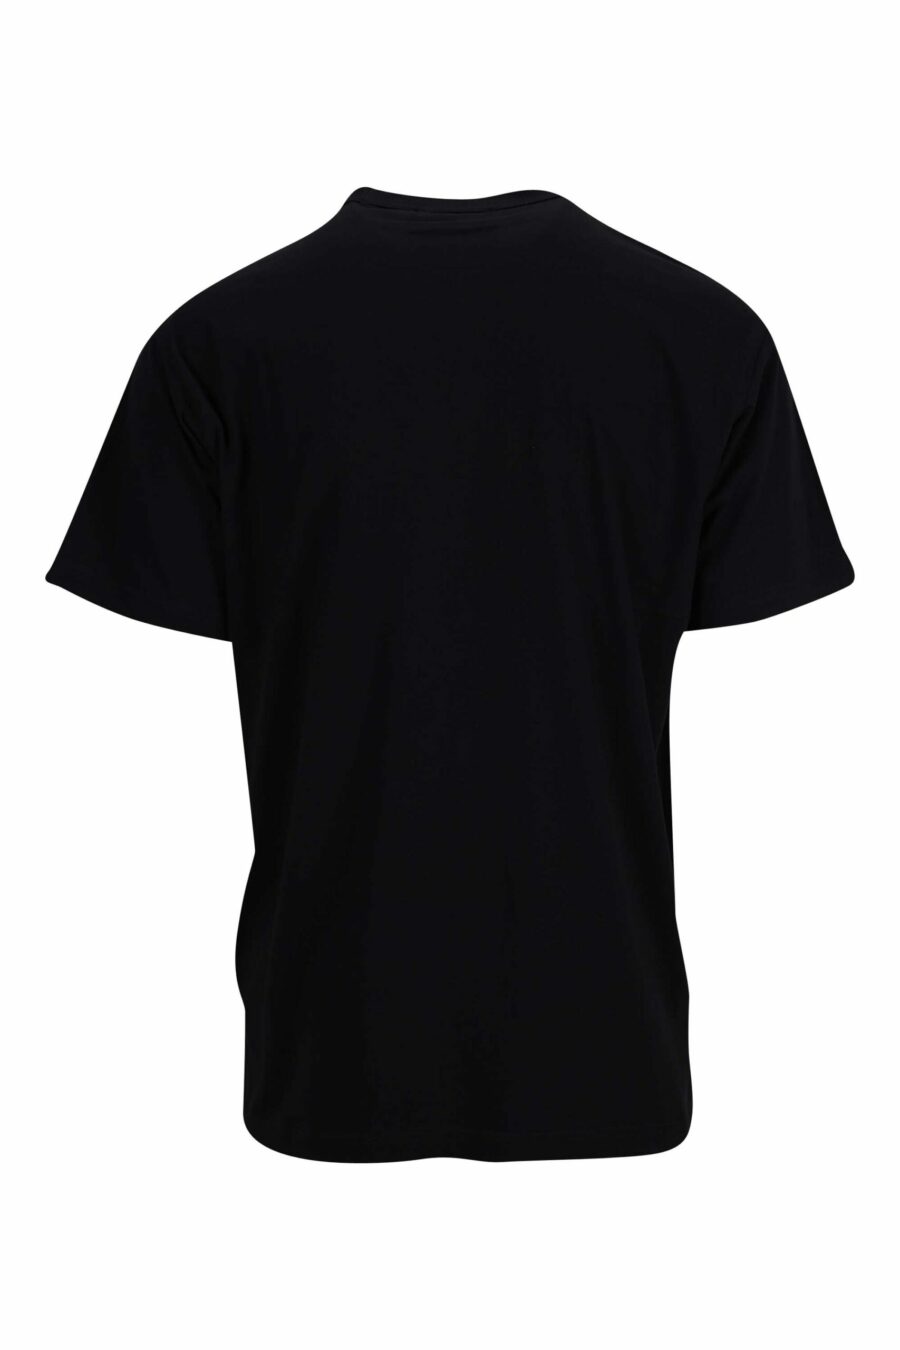 T-shirt noir avec mini-logo circulaire bleu métallique - 8052019402216 1 à l'échelle